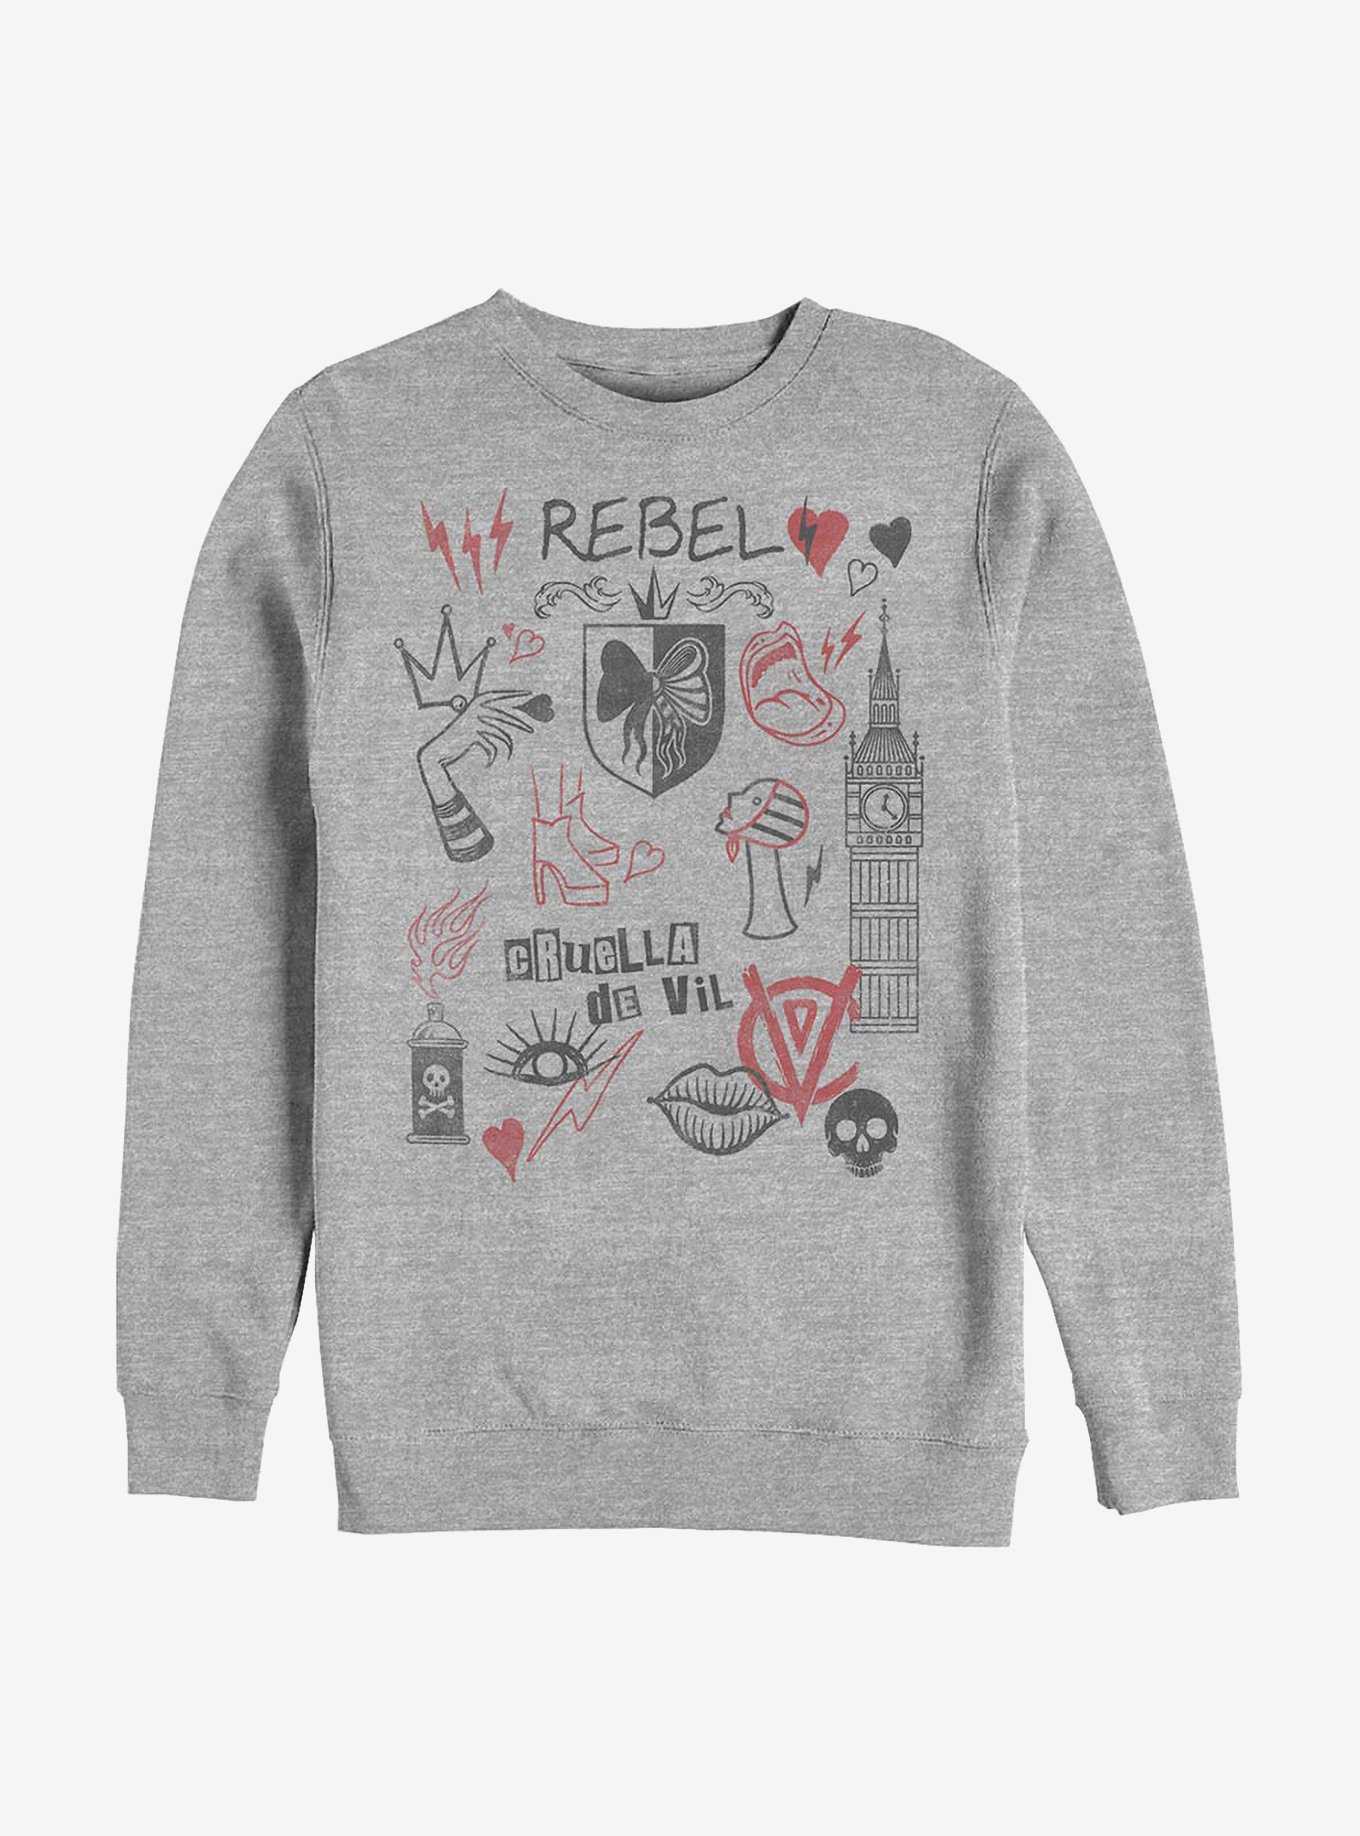 Disney Cruella Rebel Queen Sweatshirt, , hi-res